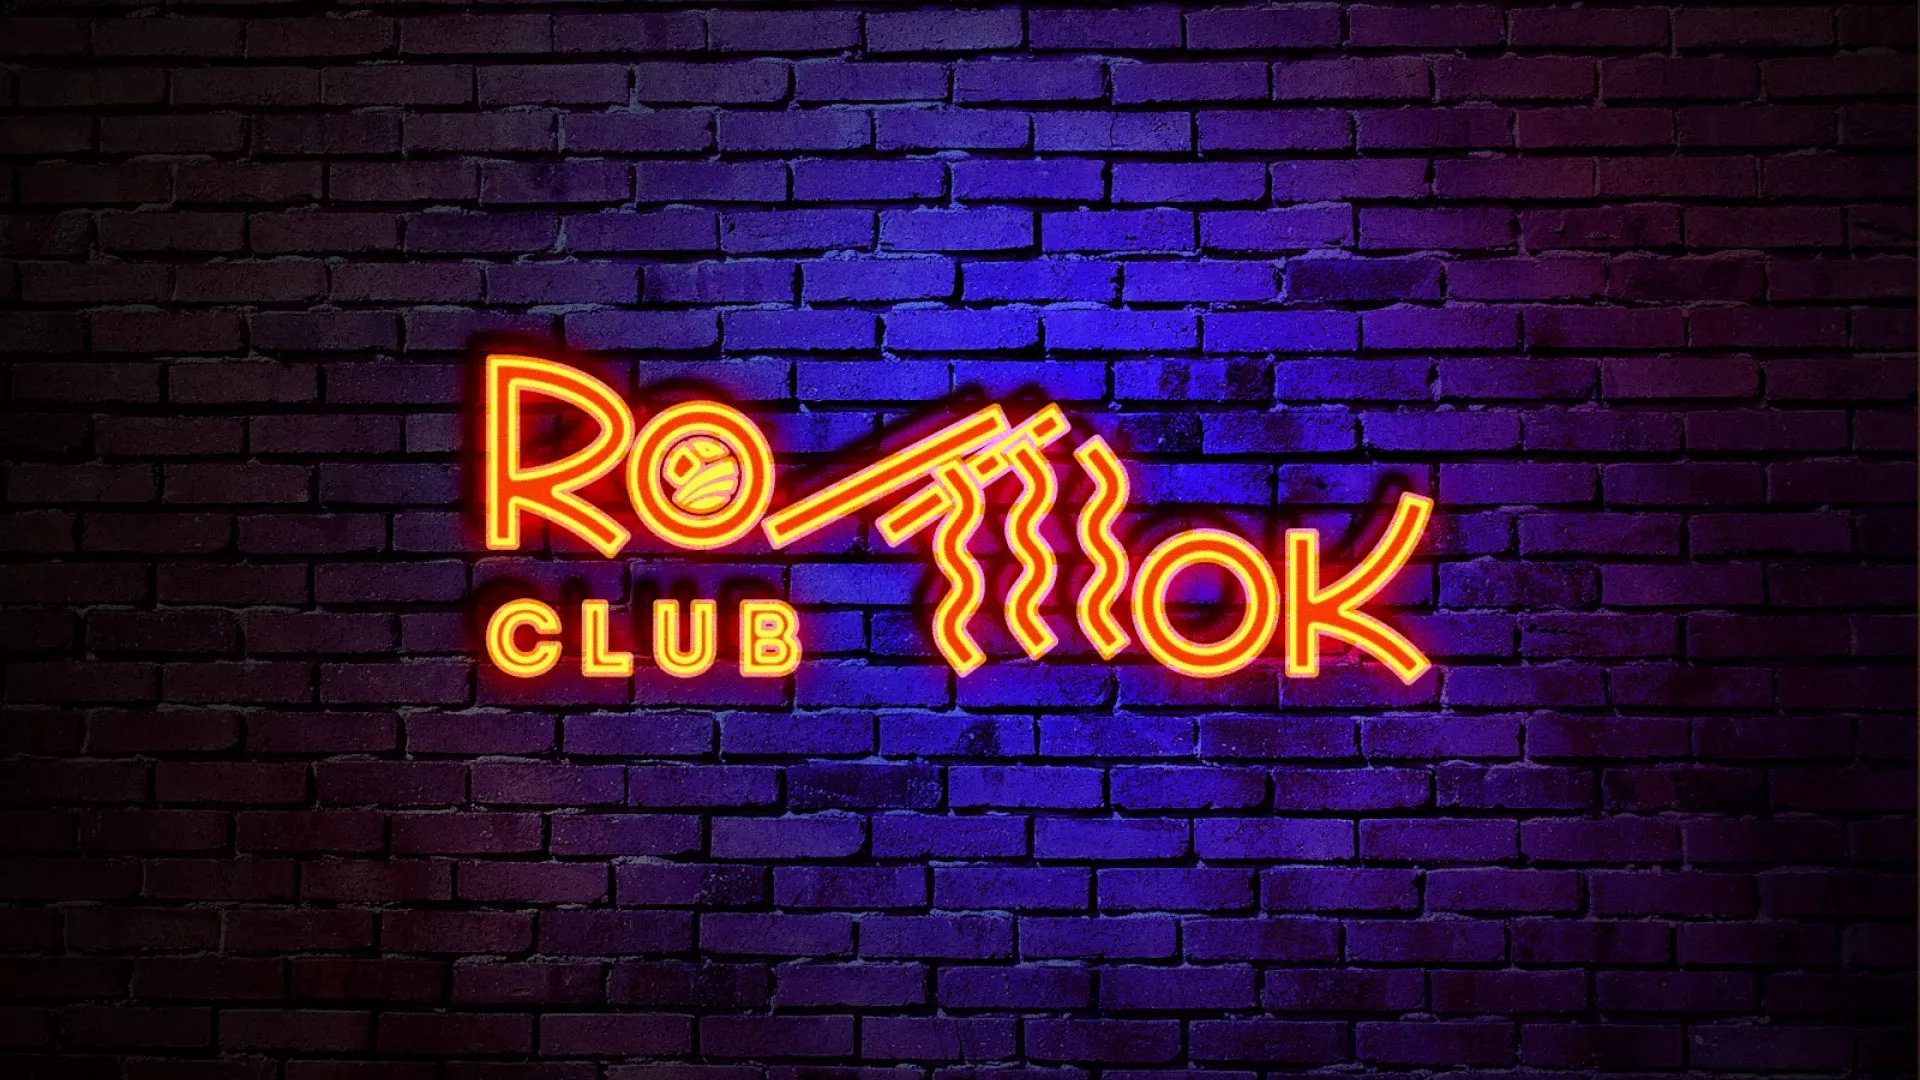 Разработка интерьерной вывески суши-бара «Roll Wok Club» в Новоалександровске